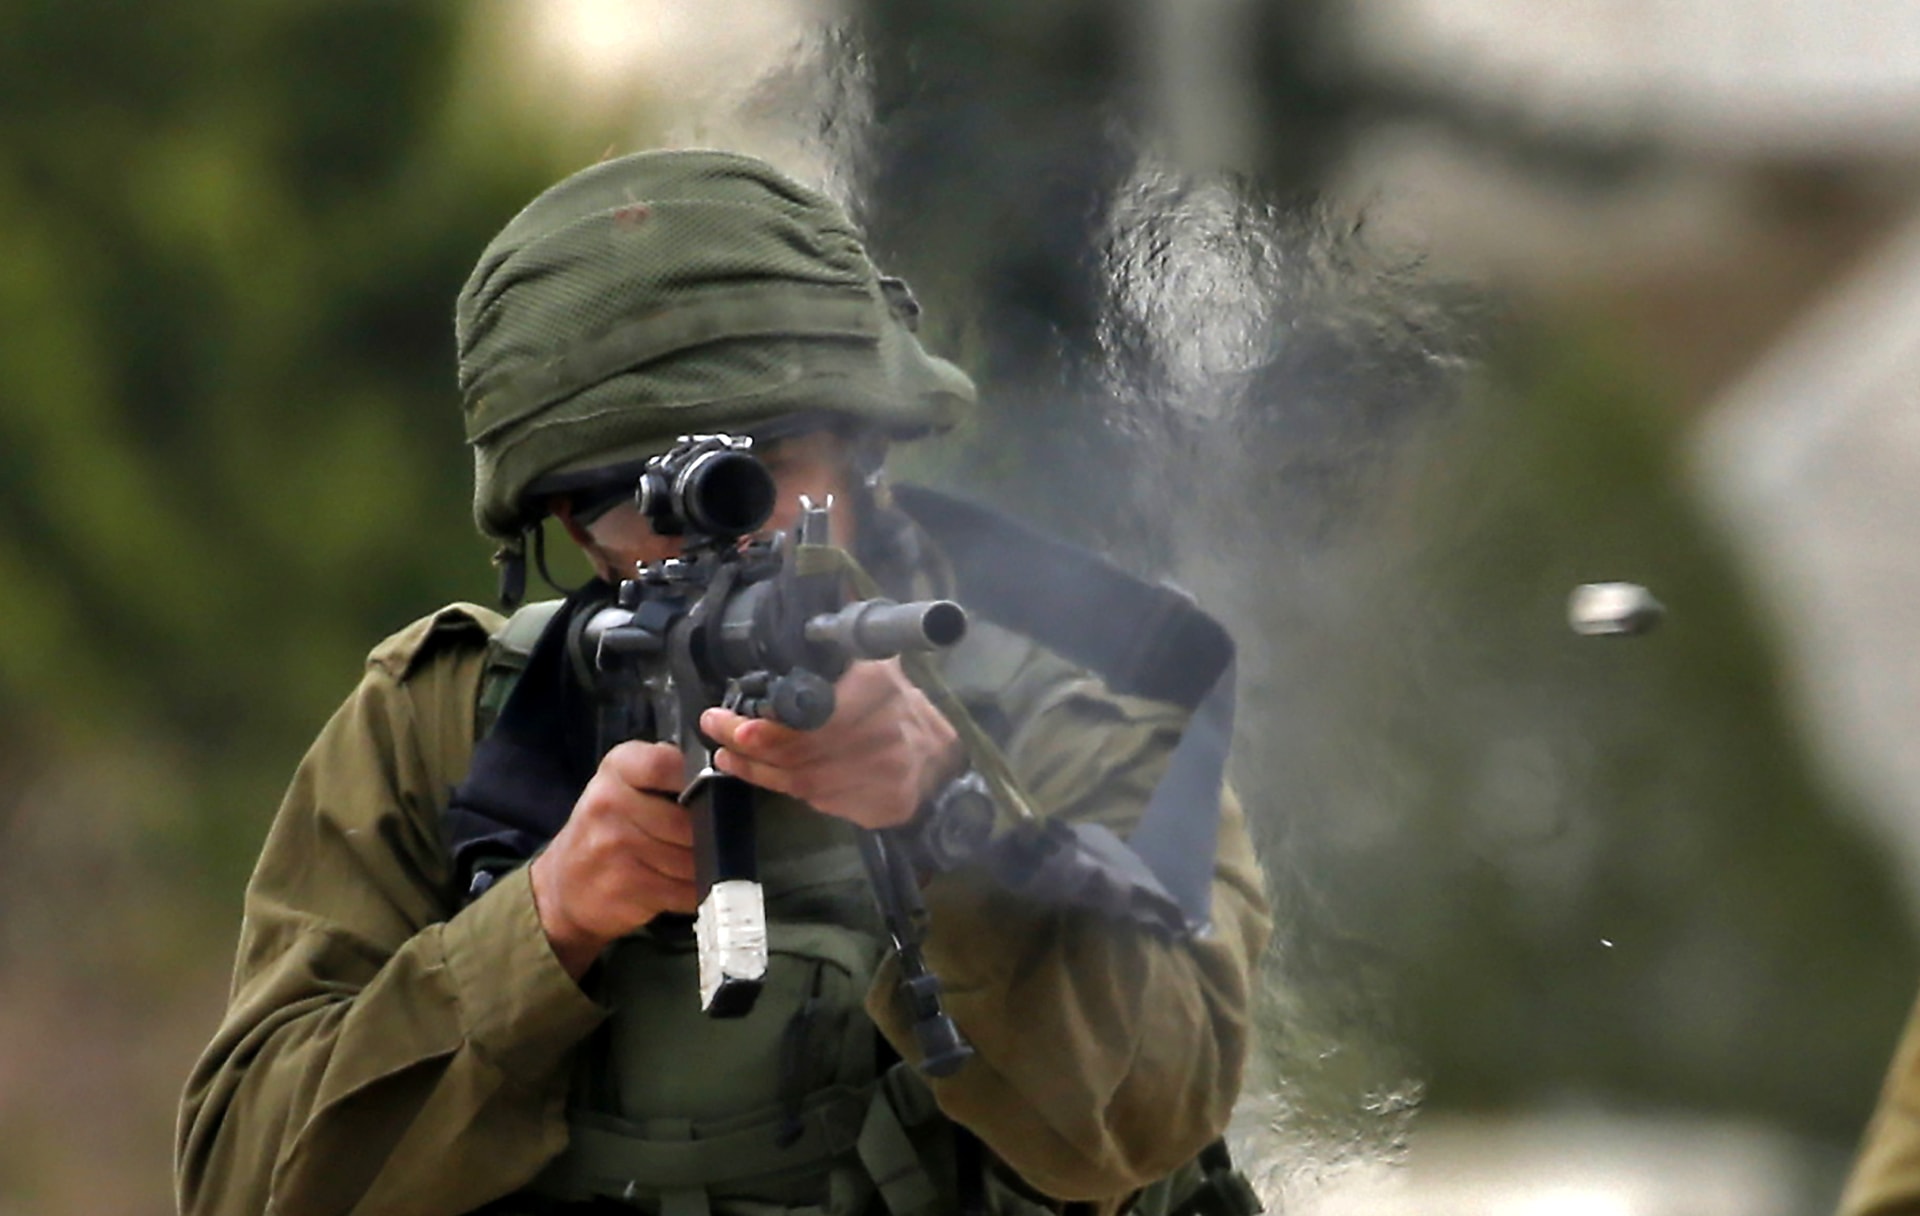 الجيش الإسرائيلي: محاولة إطلاق نار على موقع عسكري قرب نابلس